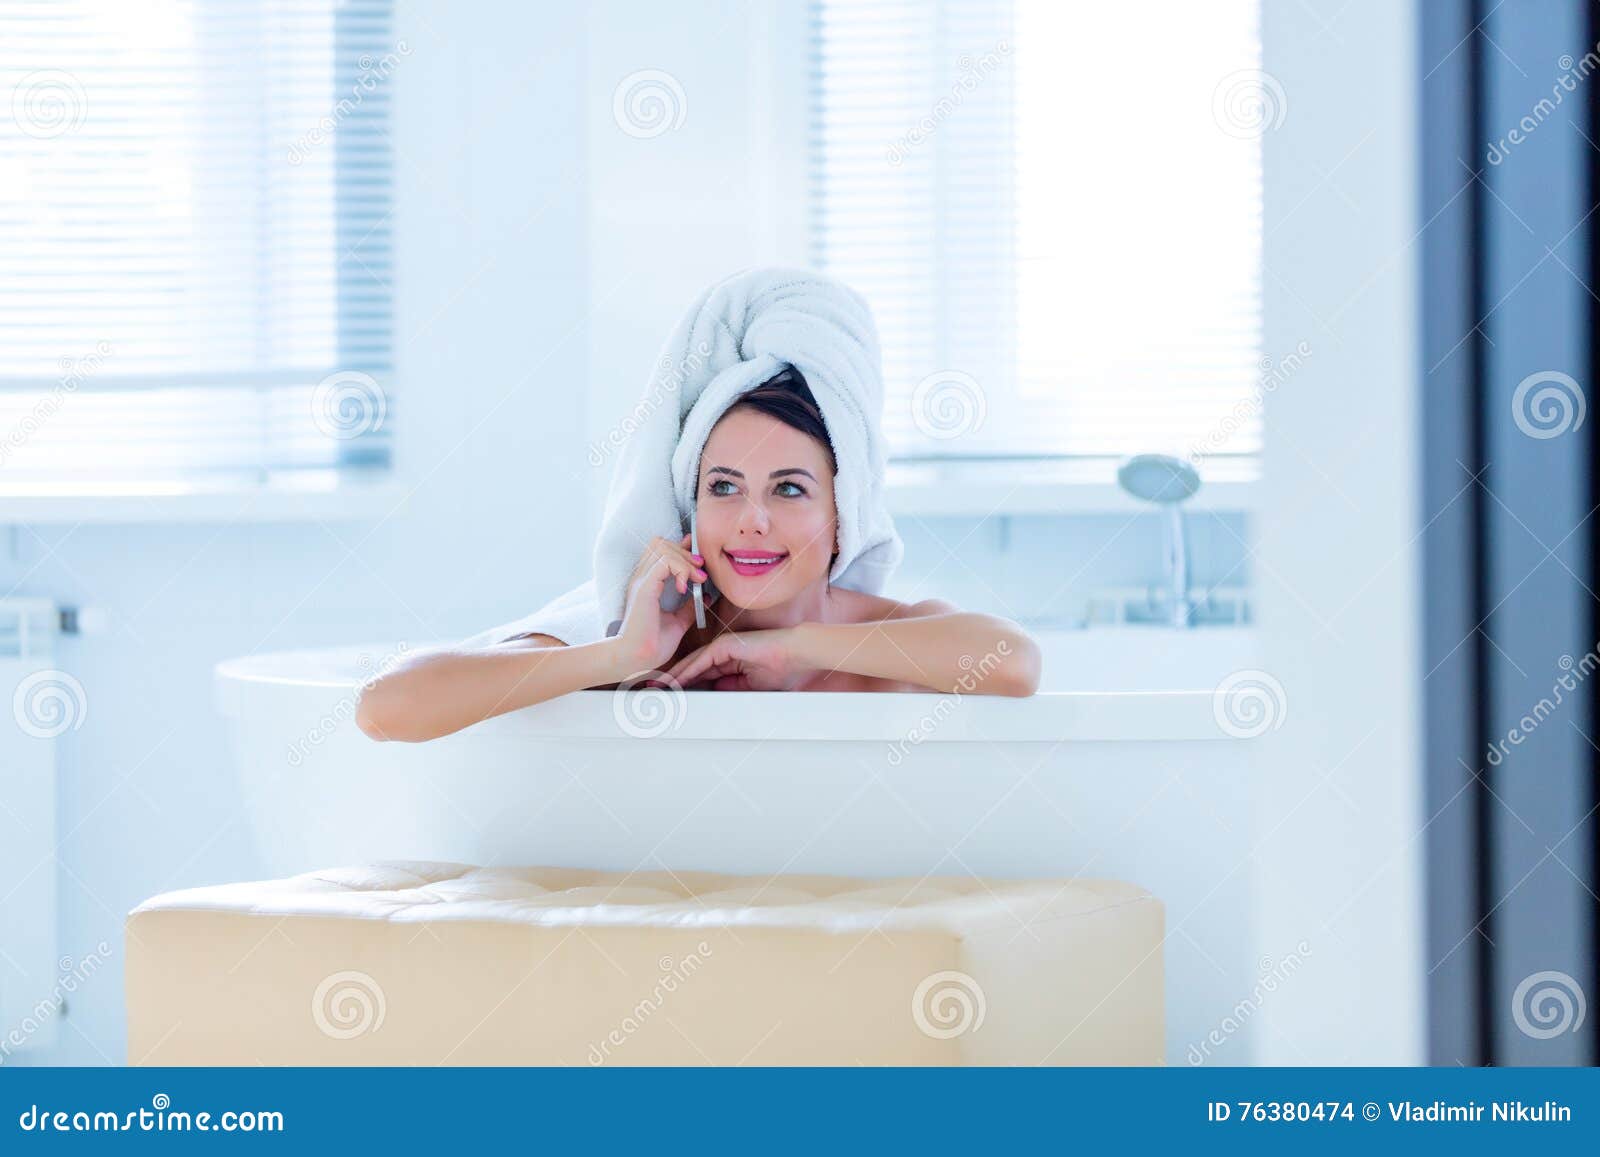 Жена после ванны. Девушка в ванне с телефоном. Девушка в ванной с телефоном. Женщина в ванной с телефоном. Расслабленная женщина в ванной.